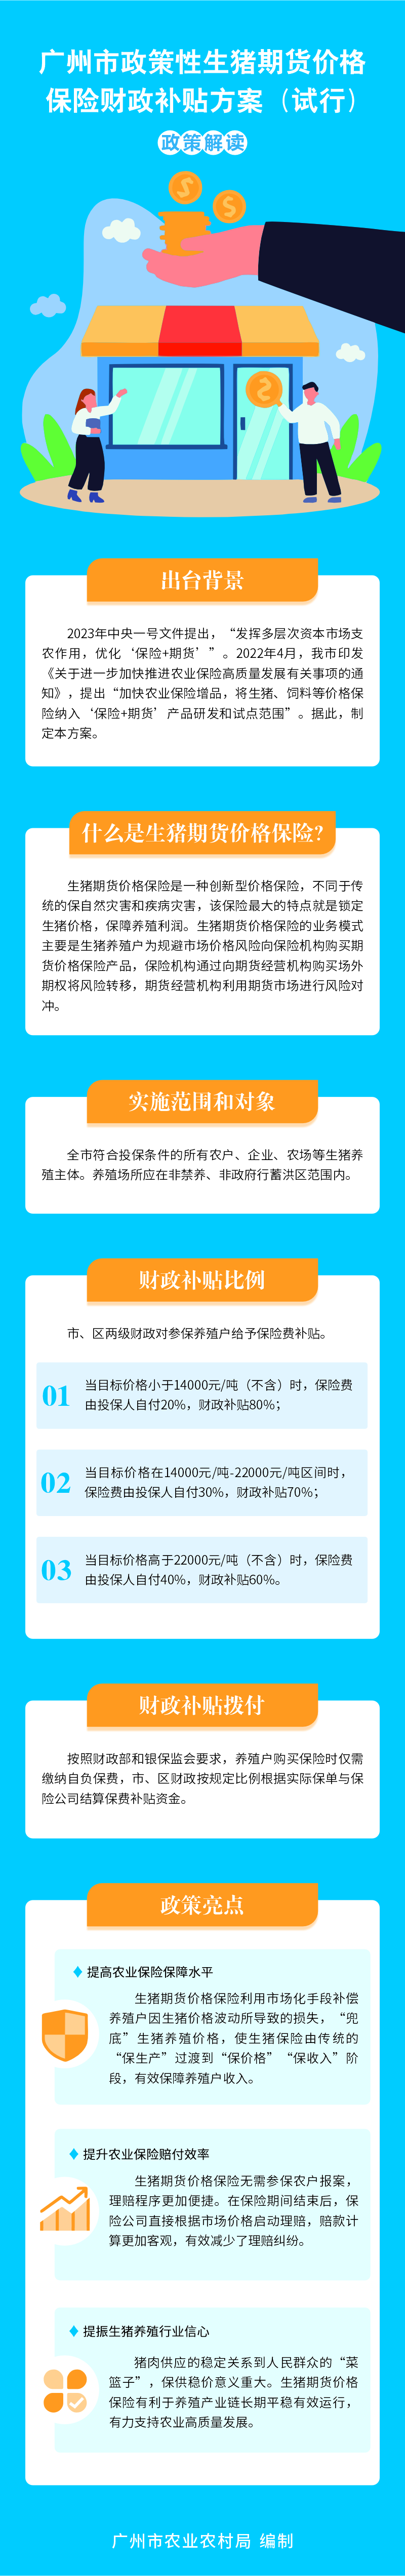 广州市政策性生猪期货价格保险财政补贴方案（试行）政策解读4894848.jpg